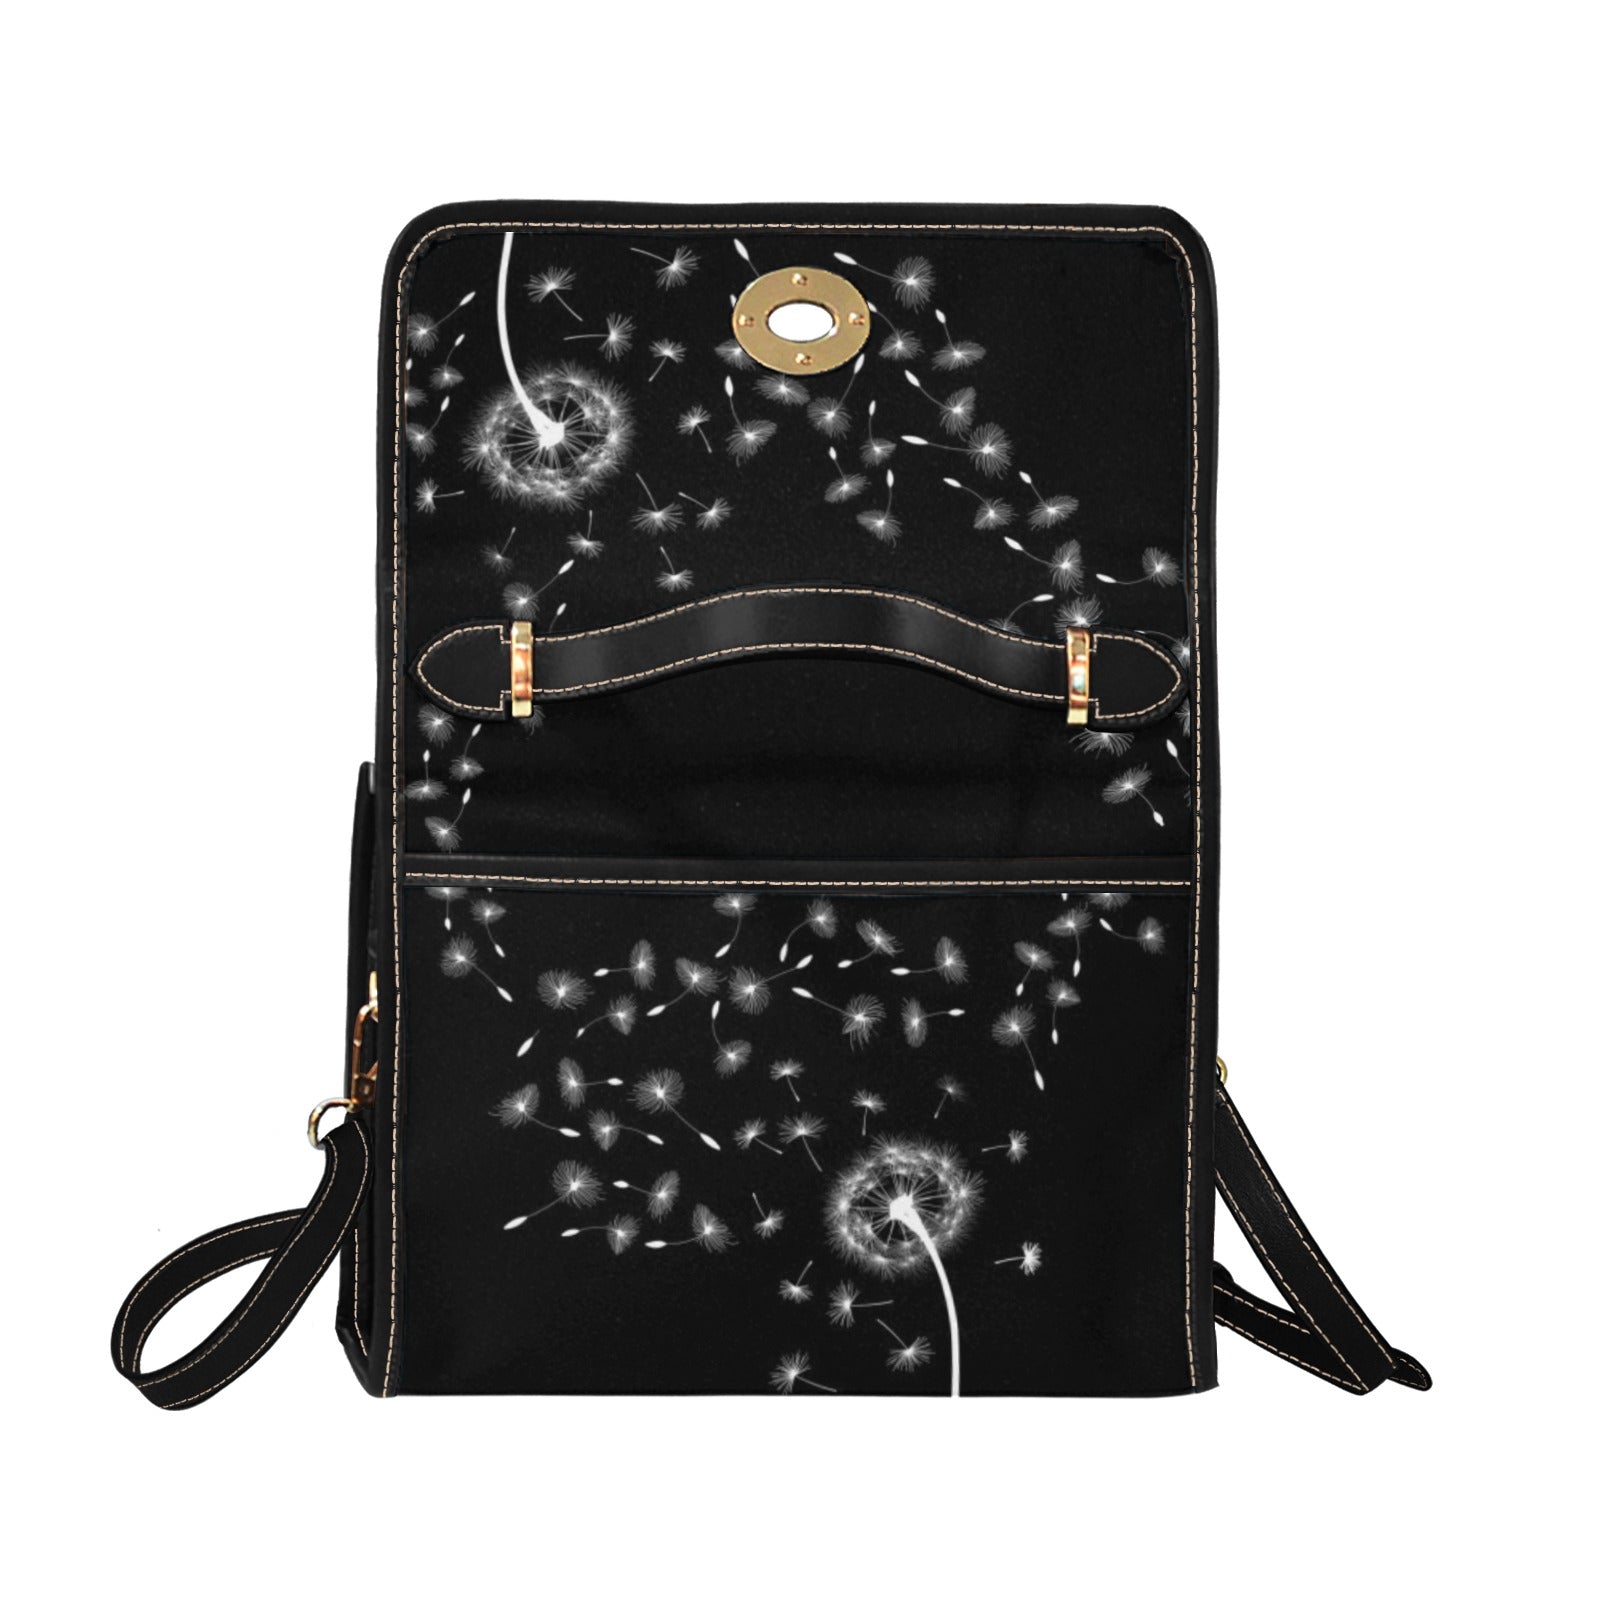 Dandelion - Waterproof Canvas Handbag